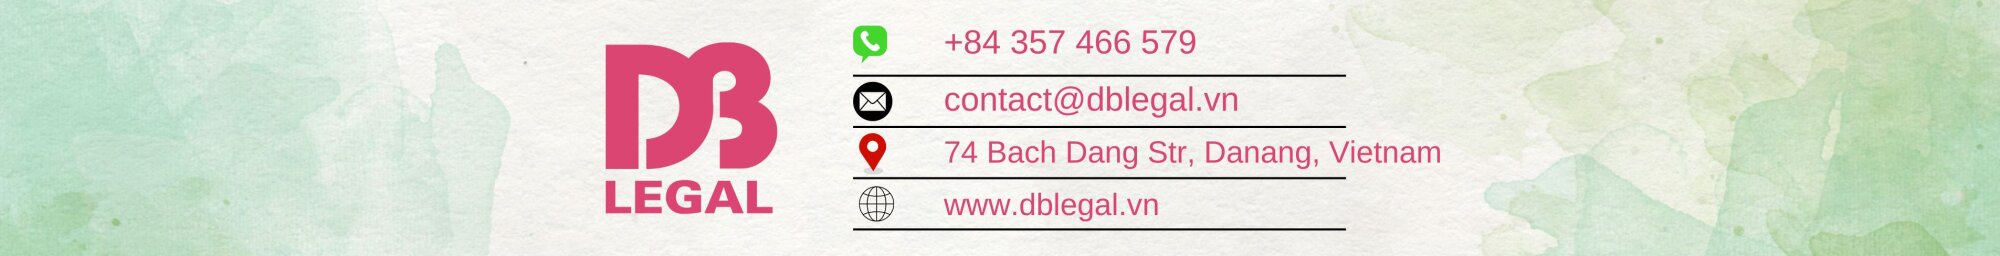 DB Legal Co., Ltd cover photo